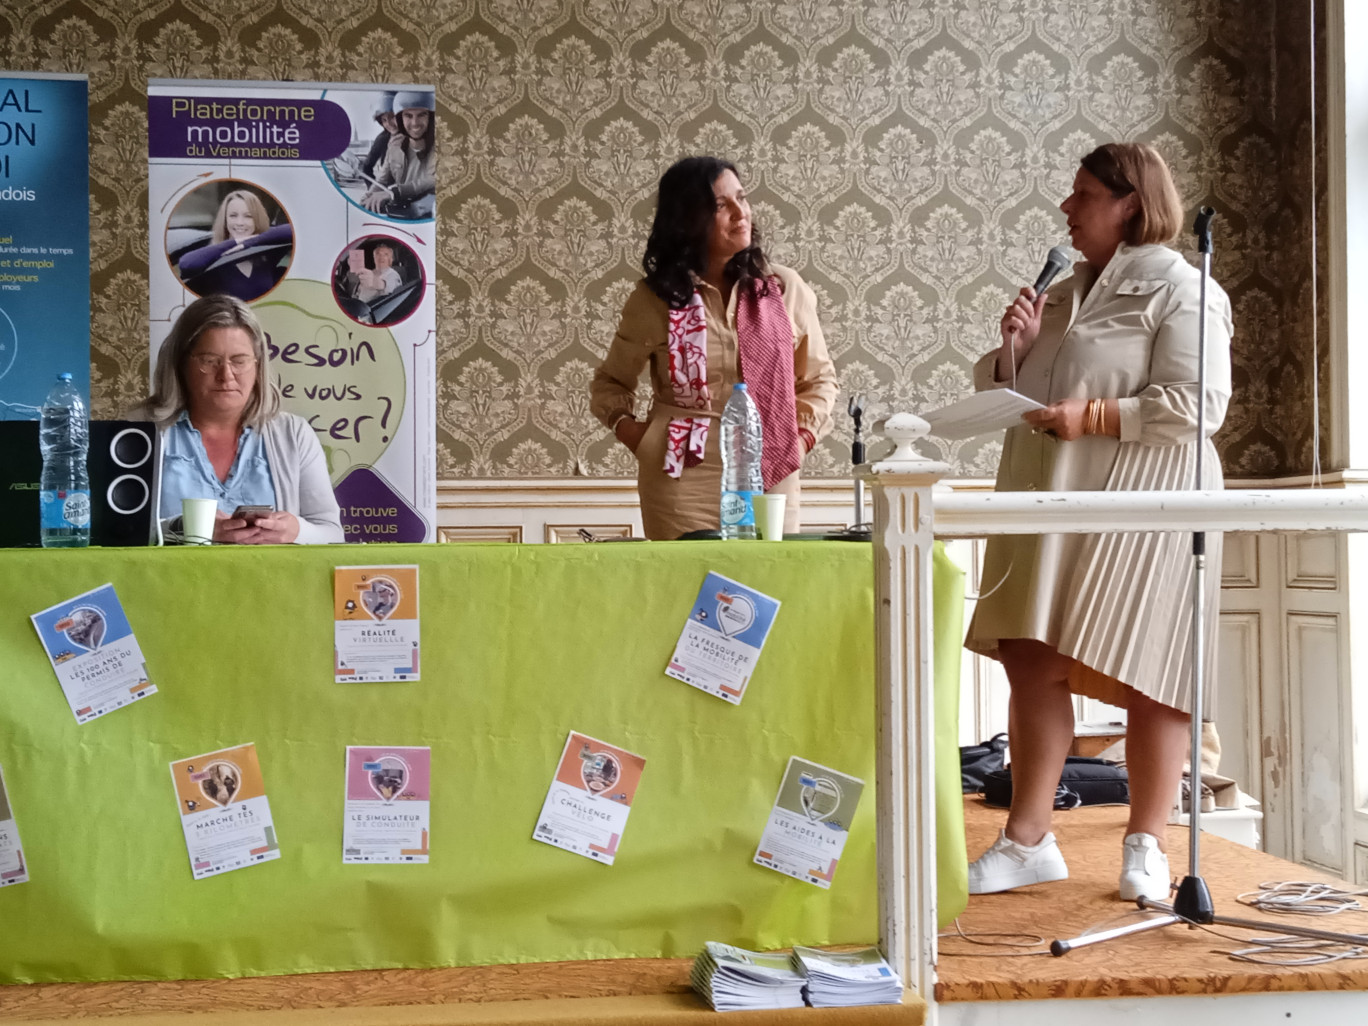 Manal Faxelle, présidente de Femmes 3000 en Hauts-de-France (au centre) a apporté son soutien à l’équipe de la plate-forme Mobilité du Pays du Vermandois dans le cadre de cette action. 